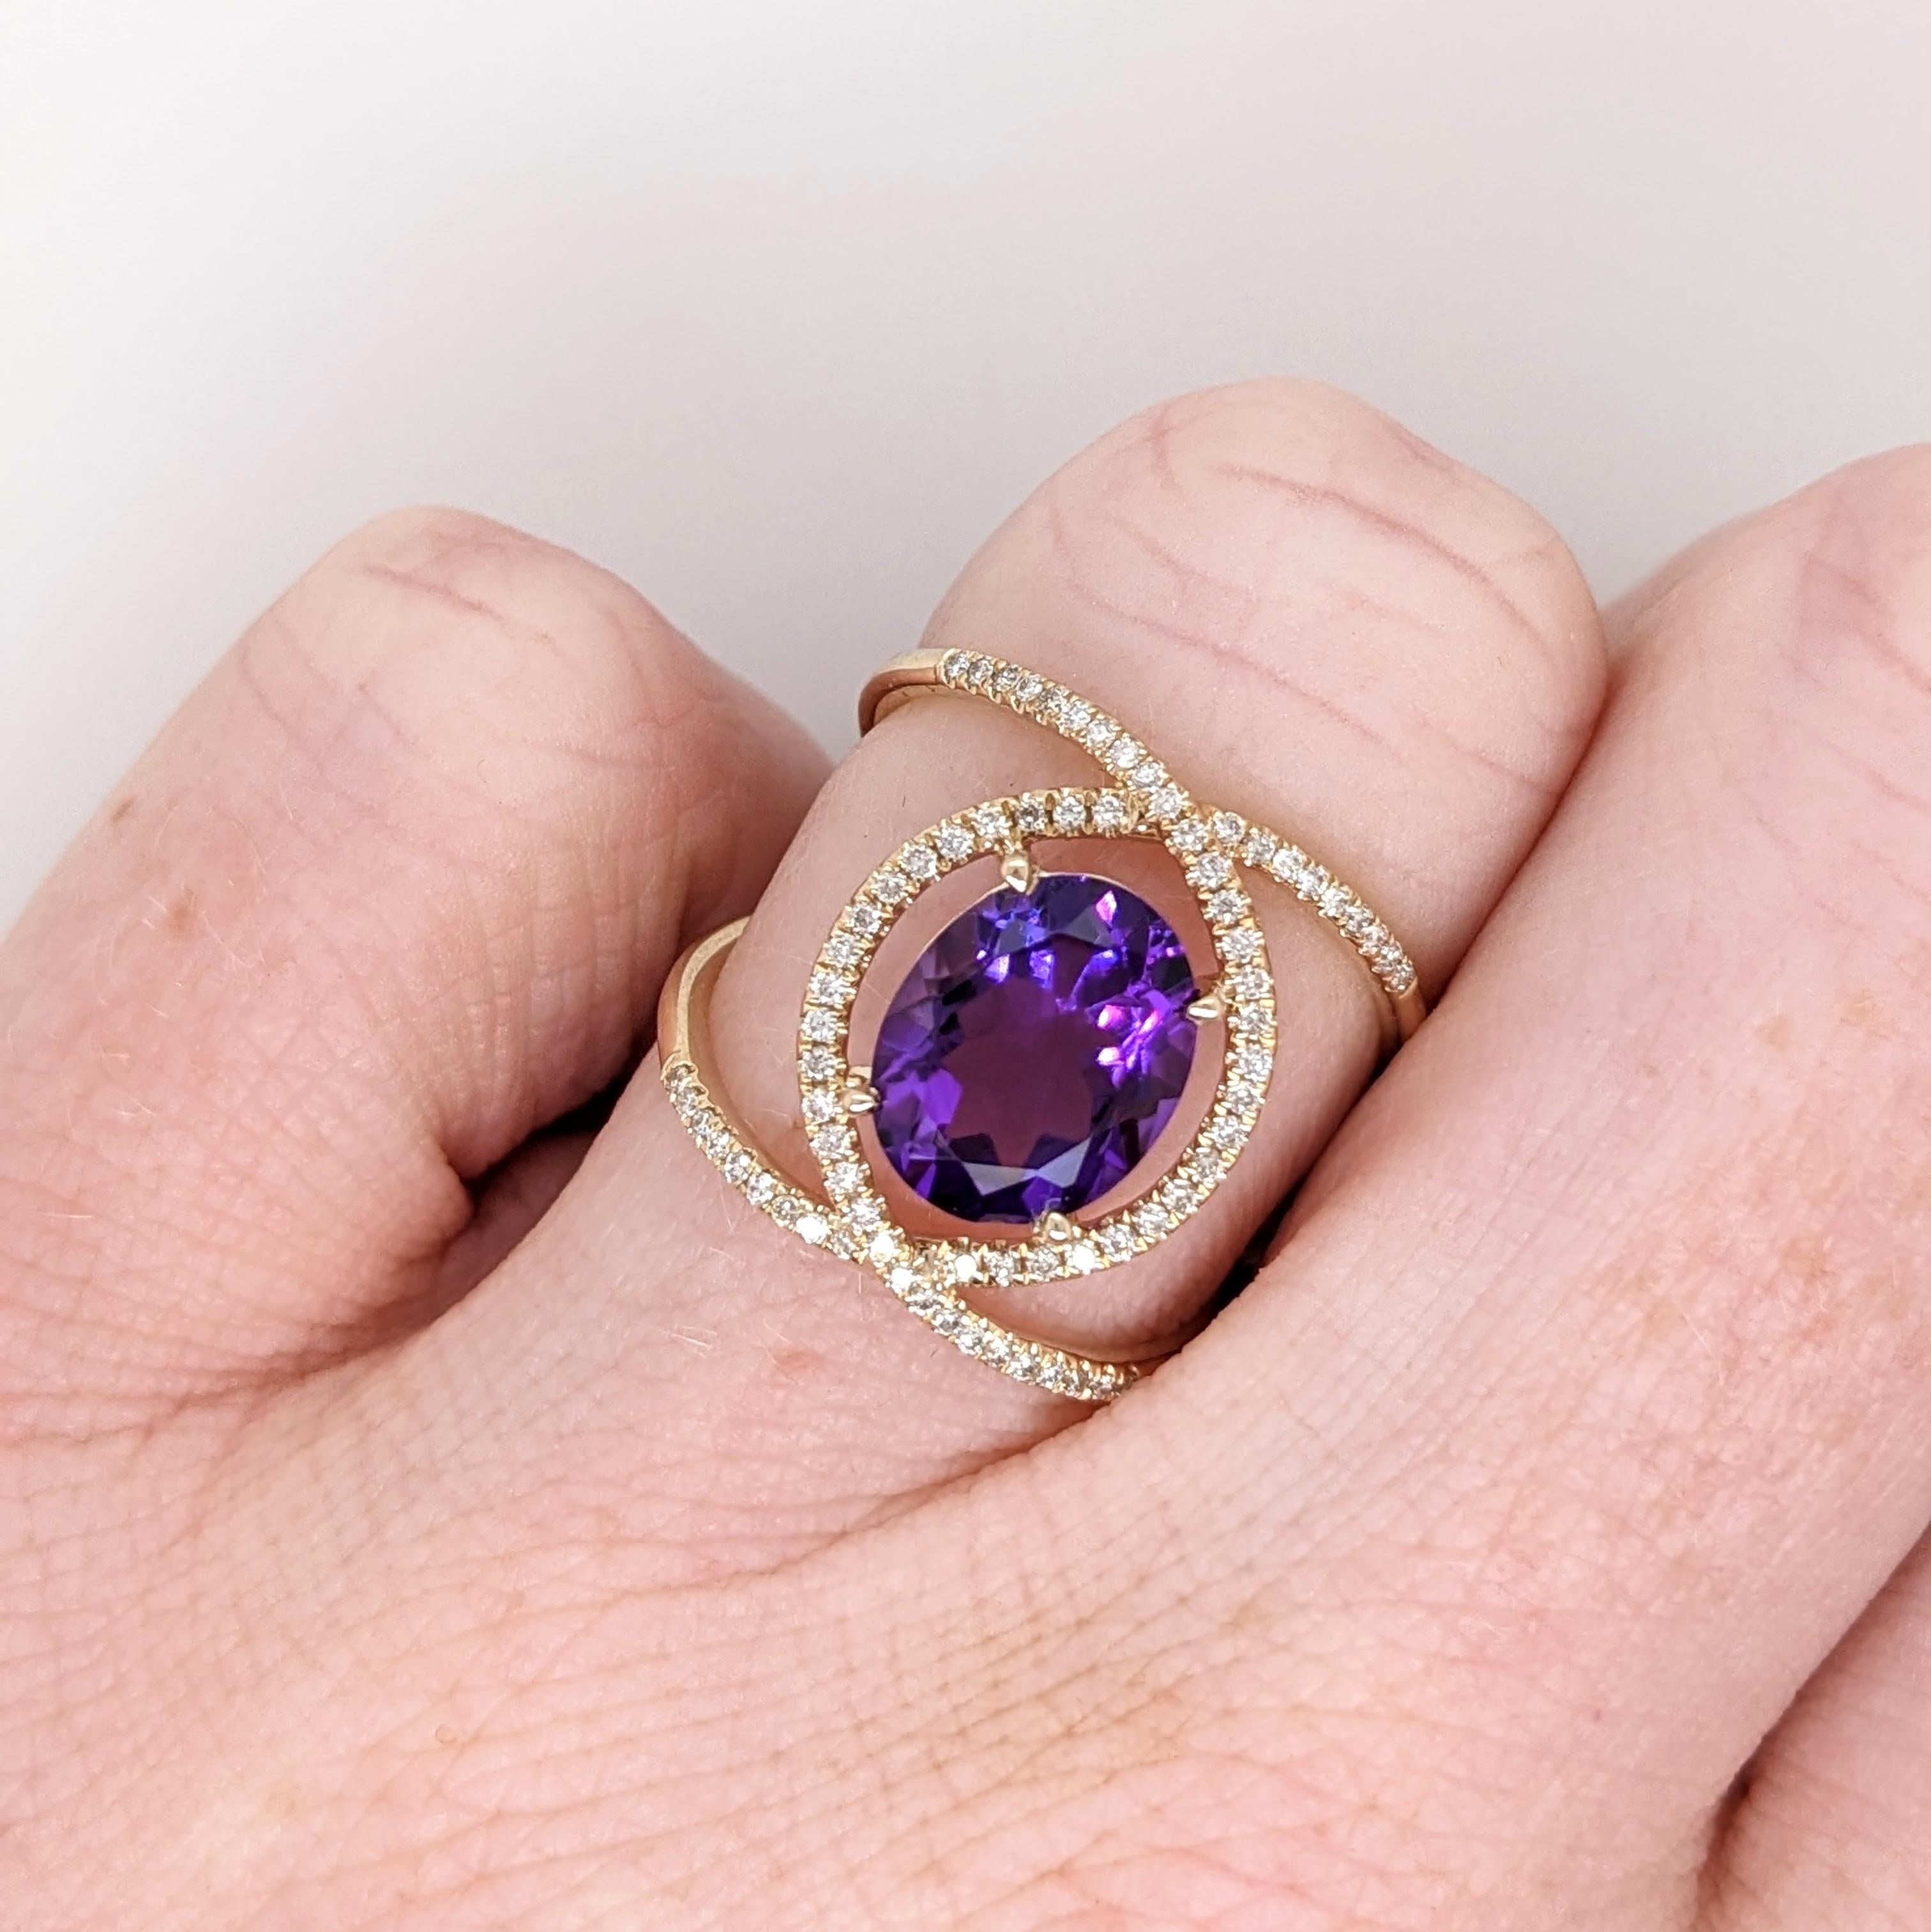 Dieser wunderschöne Statement-Ring hat ein aufwändiges Split-Shank-Design und verfügt über einen wunderschönen 10x8mm ovalen Amethyst aus Uruguay mit einer tiefen lila Farbe und hervorragende Klarheit! Diese Ringfassung ist einzigartig und